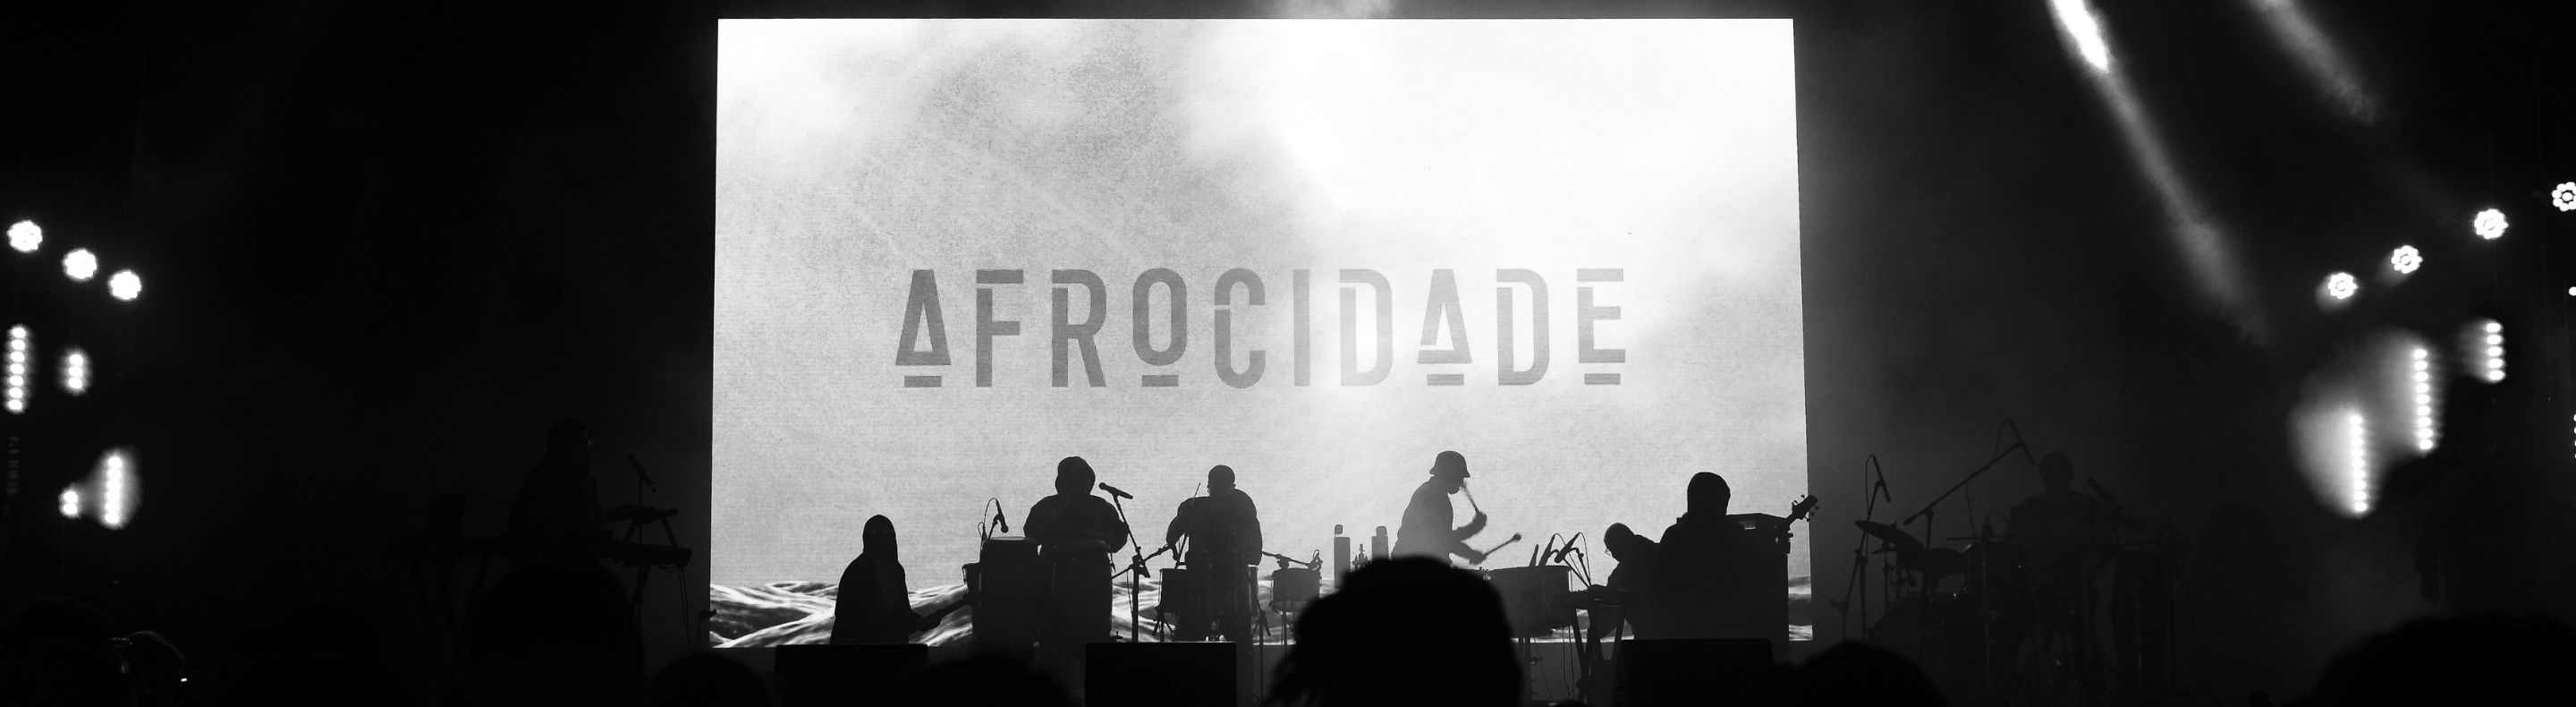 Imagem mostra letreiro em LED com o nome Afrocidade